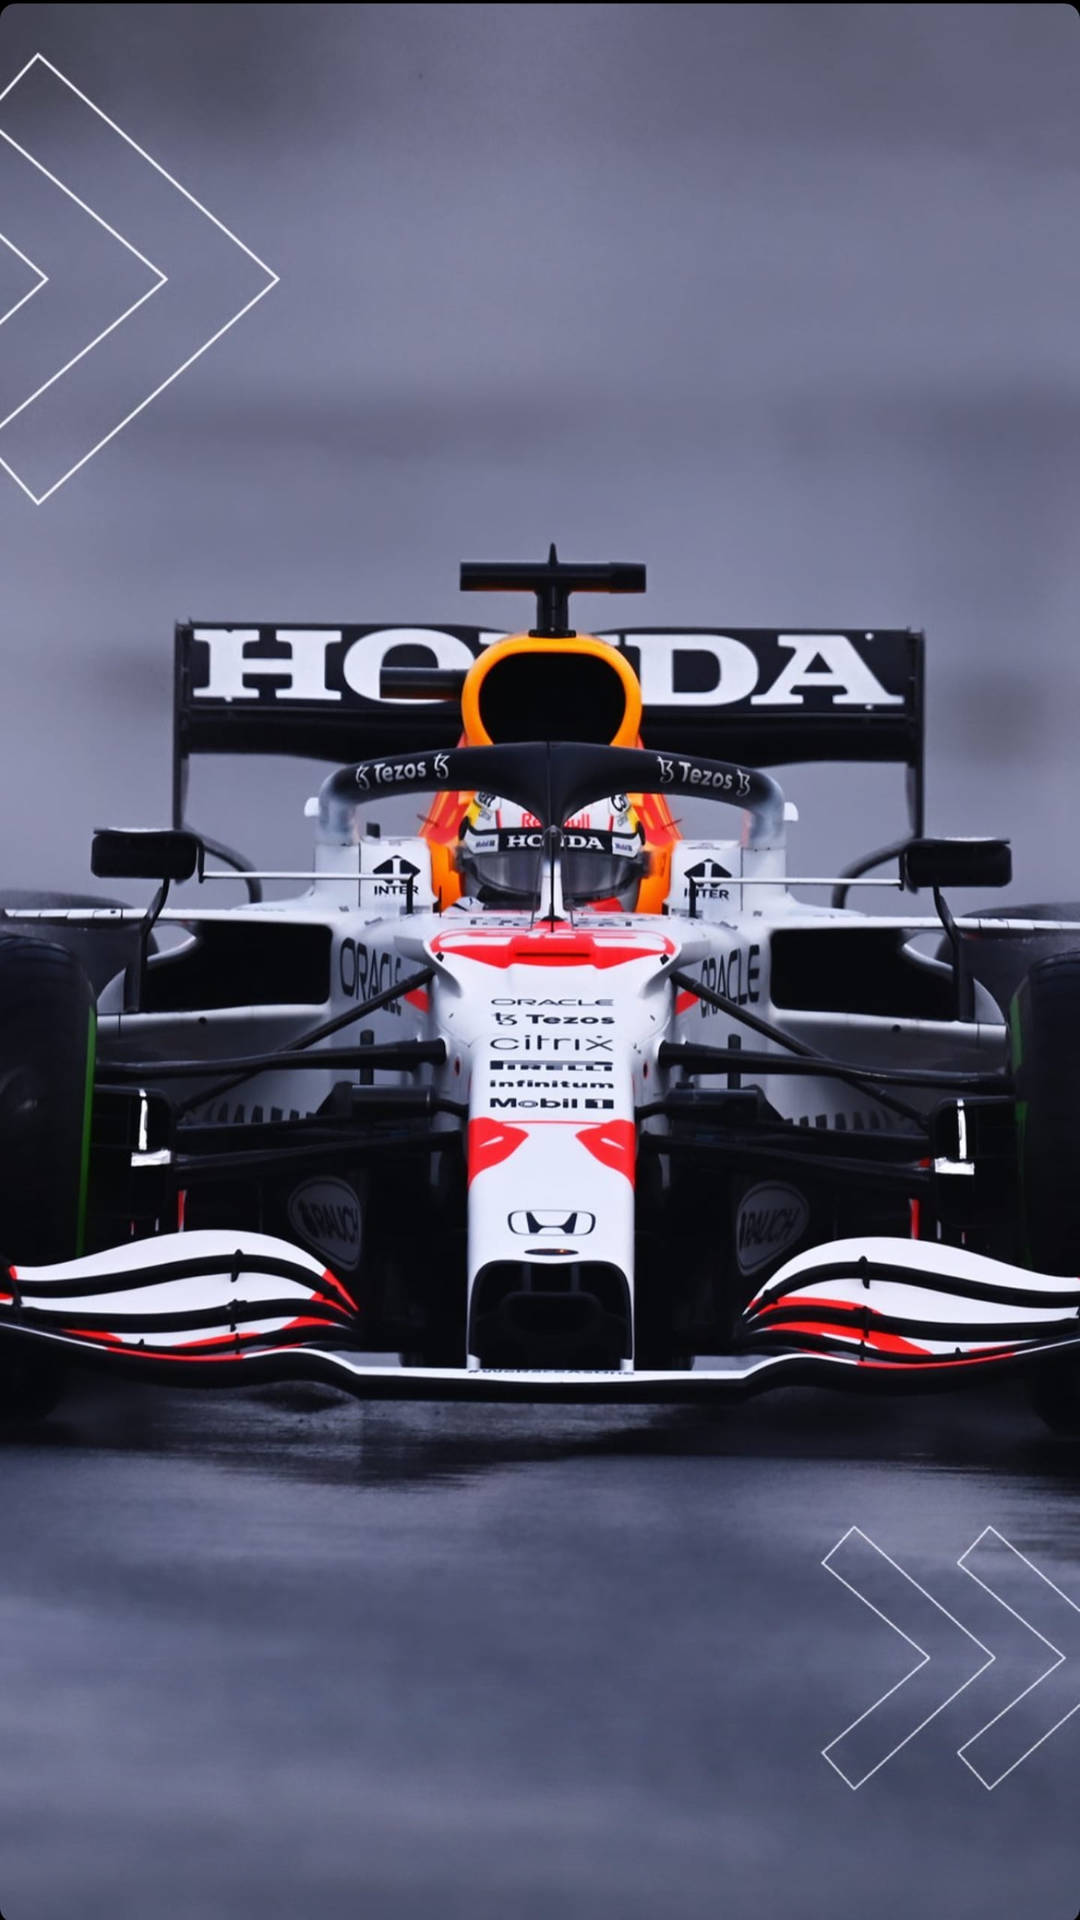 Fondode Pantalla De F1 Verstappen 2021 Gran Premio De Turquía Para Iphone. Fondo de pantalla